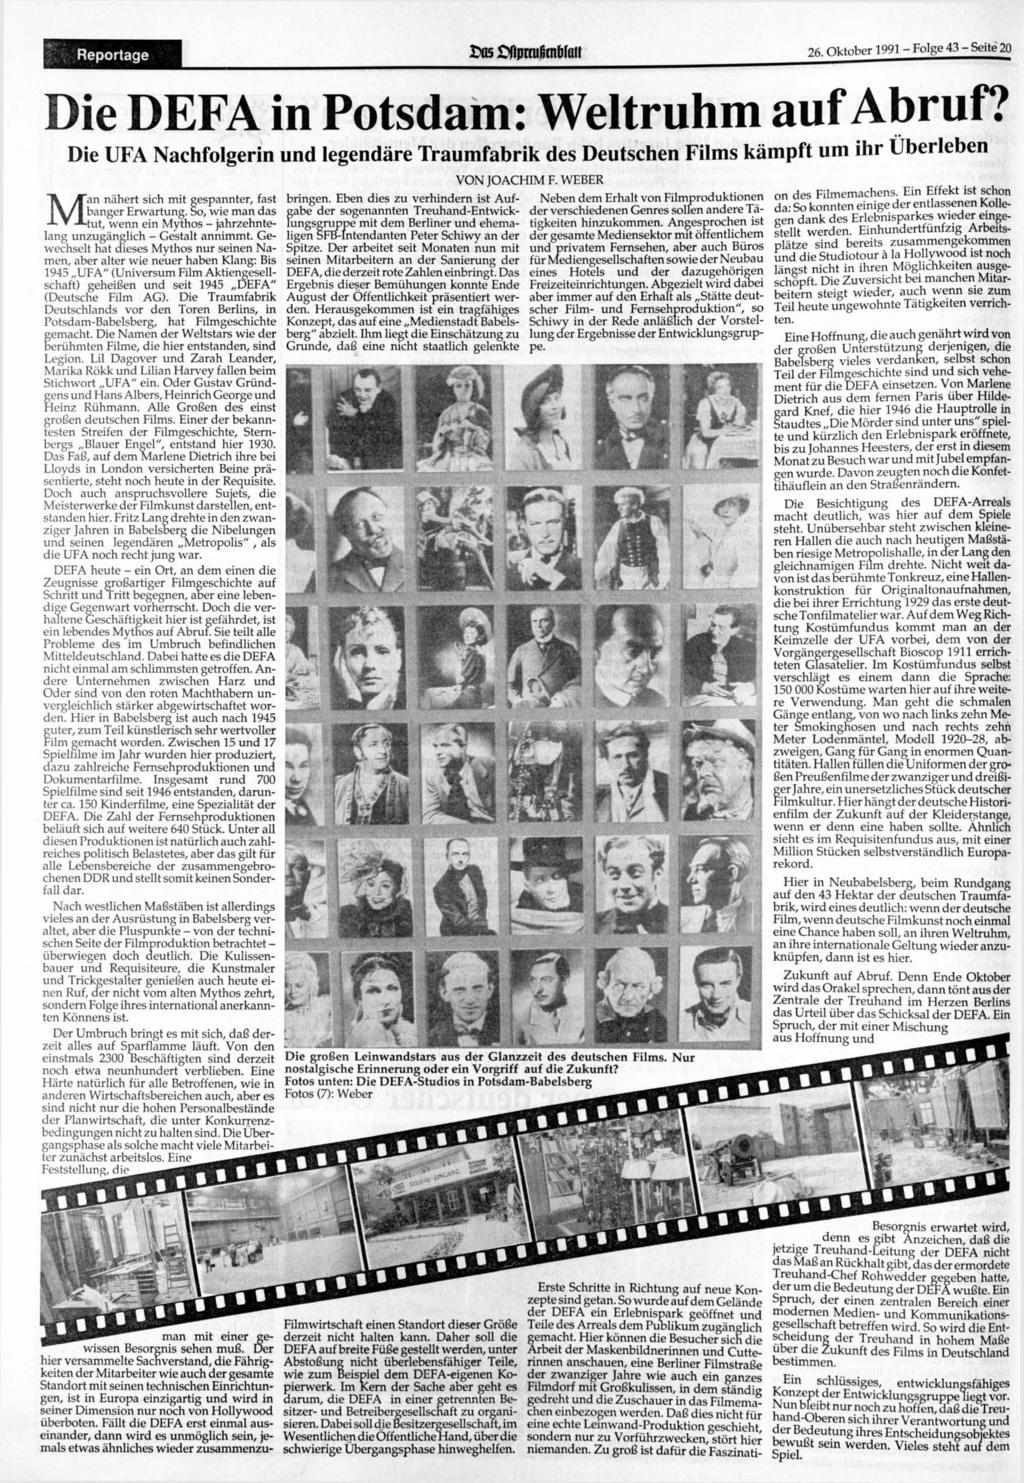 Reportage 26. 1991 - Folge 43 - Seite 20 Die DEFA in Potsdam: Weltruhm auf Abruf?